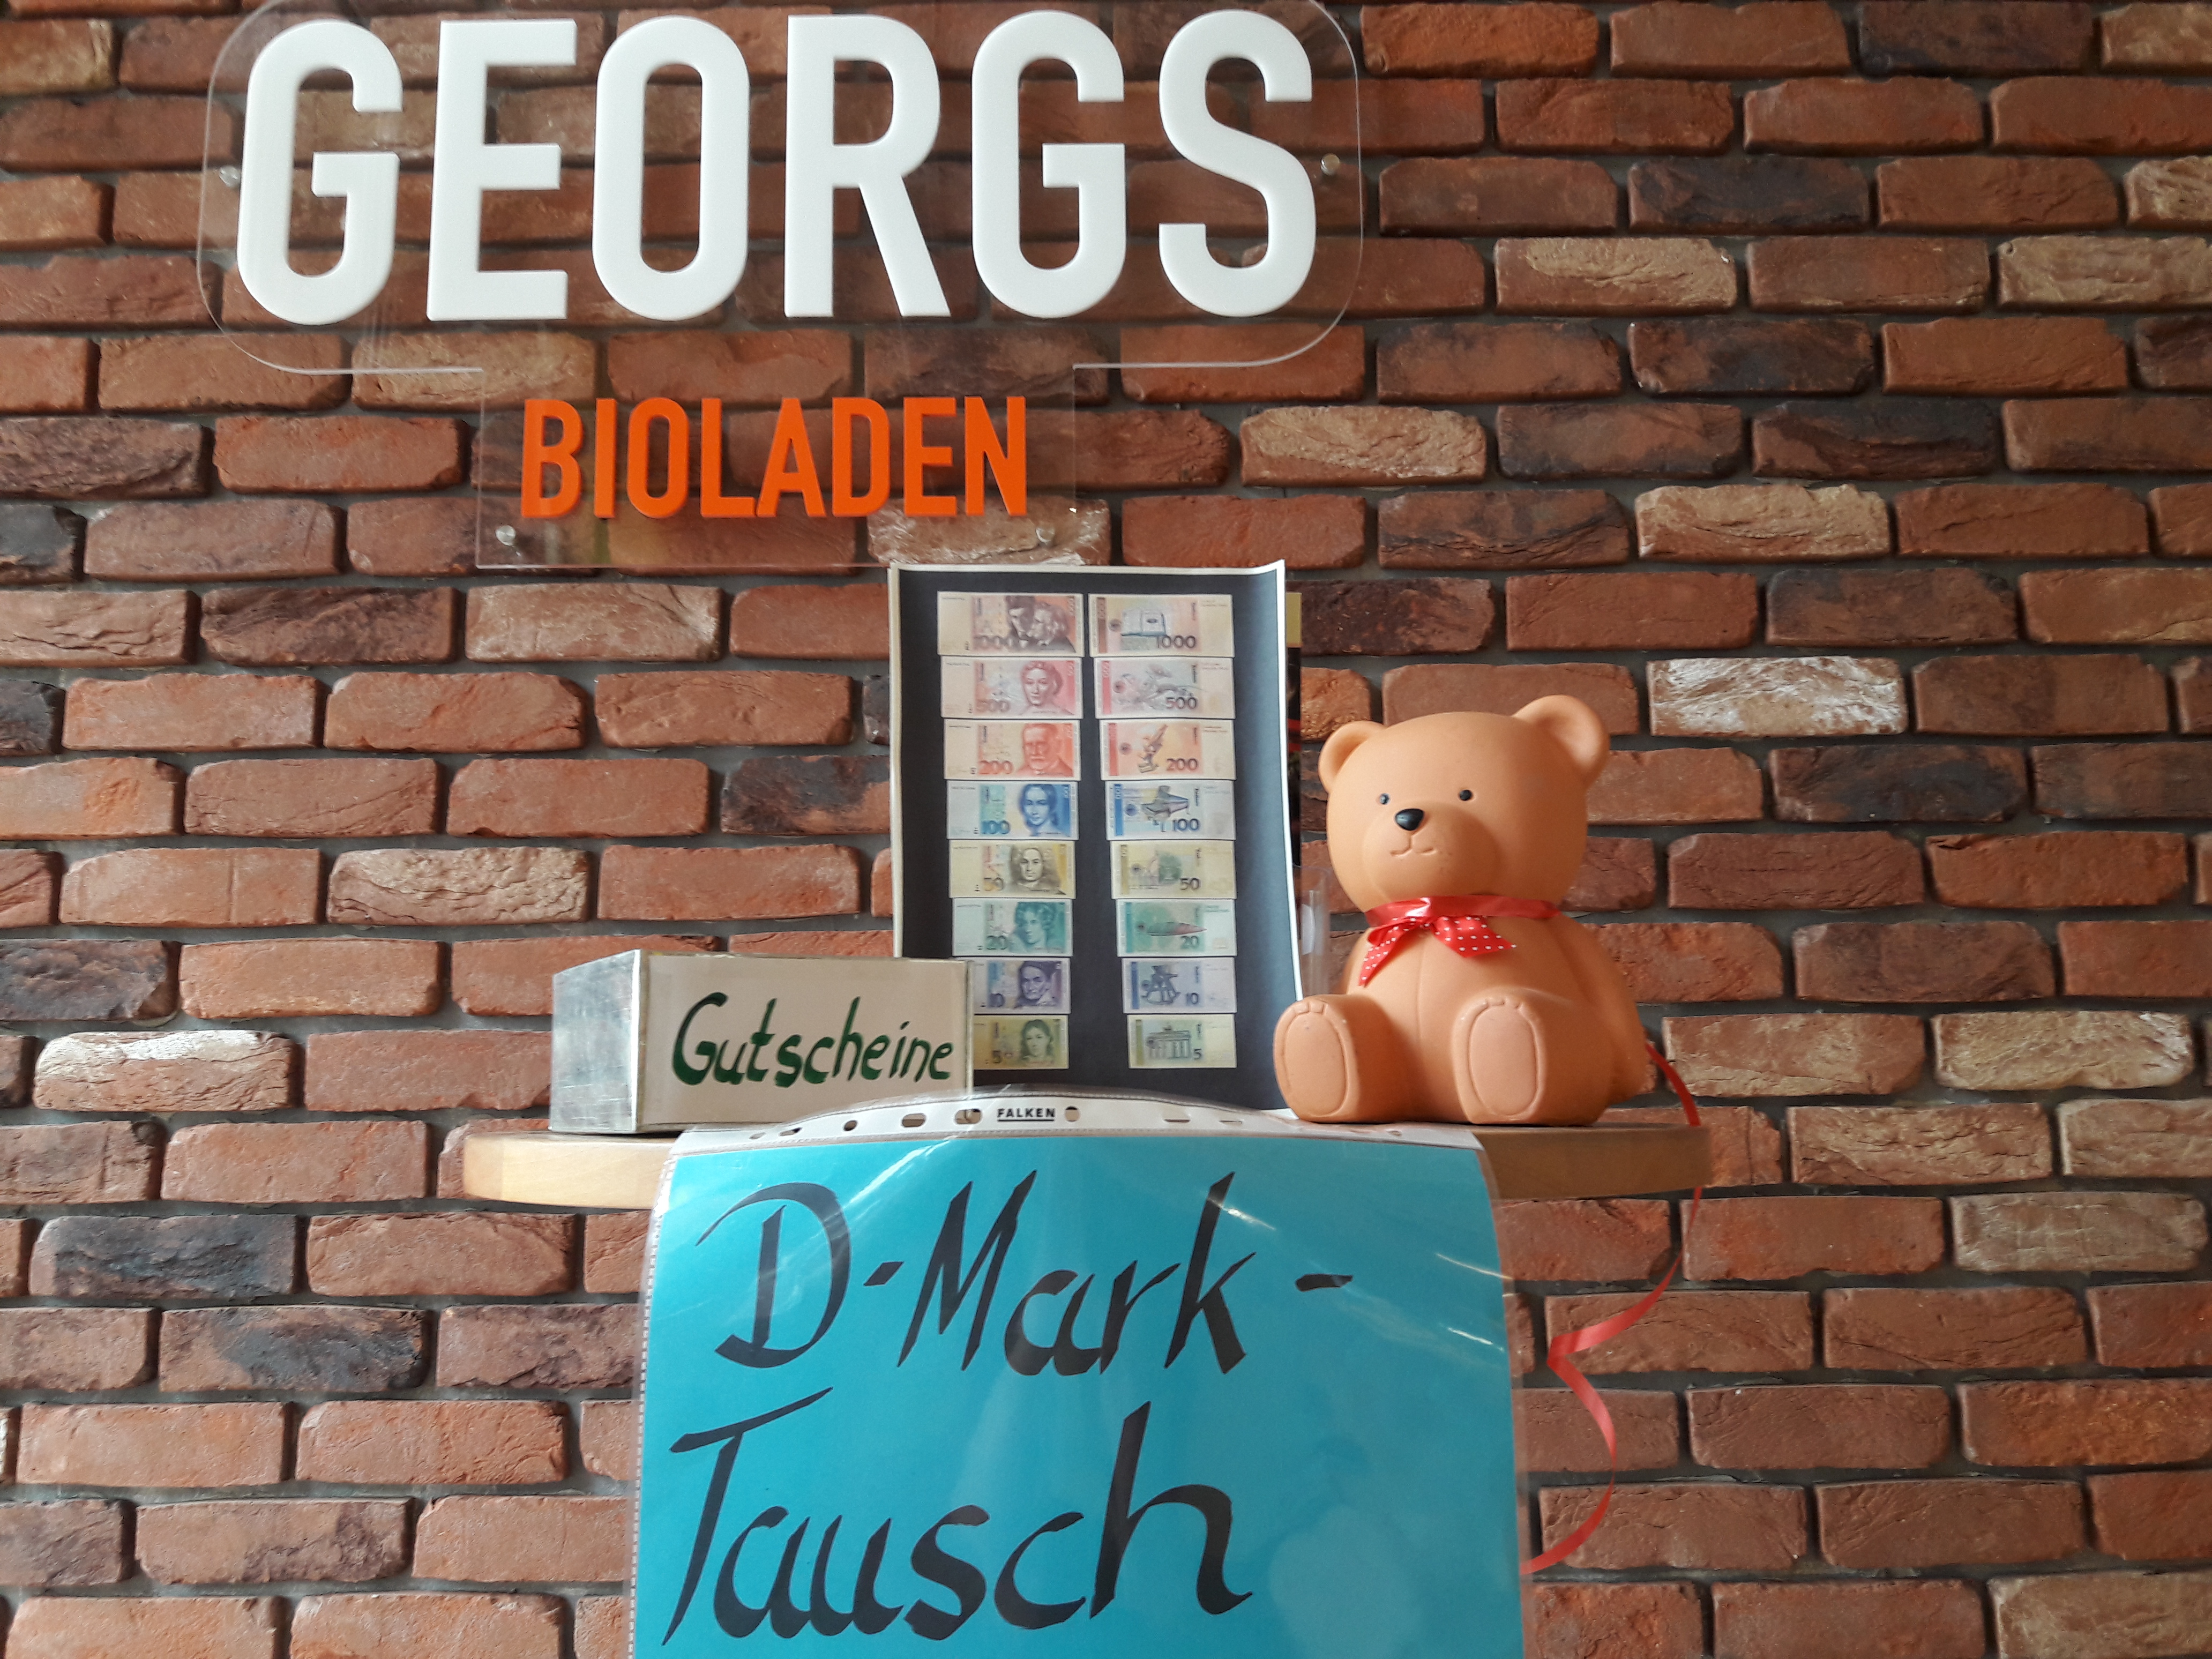 Deutsche Mark gegen Bio – Tauschaktion ab Montag, den 14. August in Georgs Bioladen